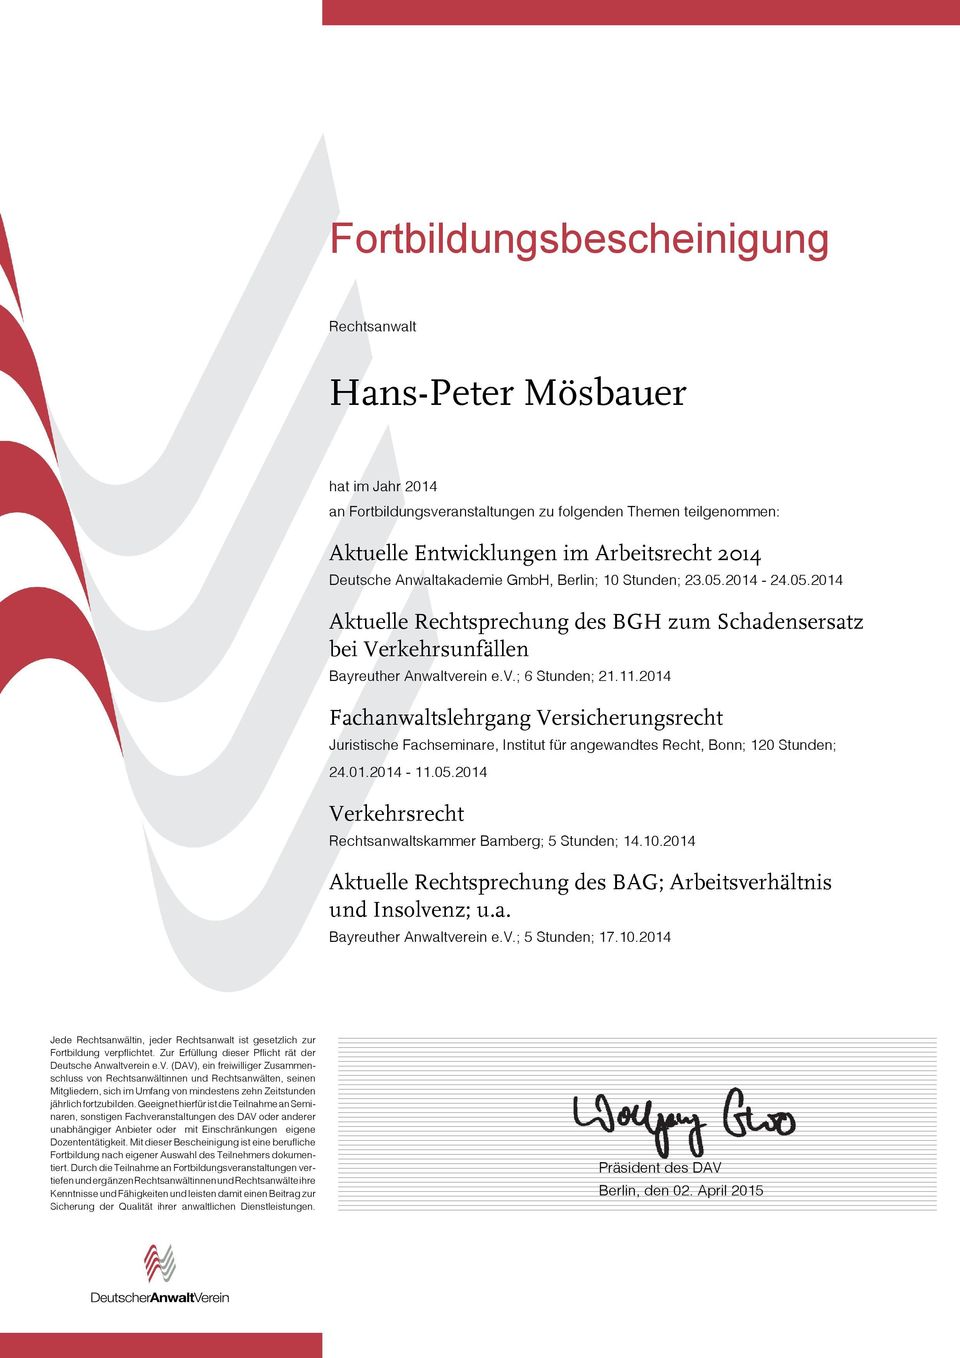 2014 Fachanwaltslehrgang Versicherungsrecht Juristische Fachseminare, Institut für angewandtes Recht, Bonn; 120 Stunden; 24.01.2014-11.05.